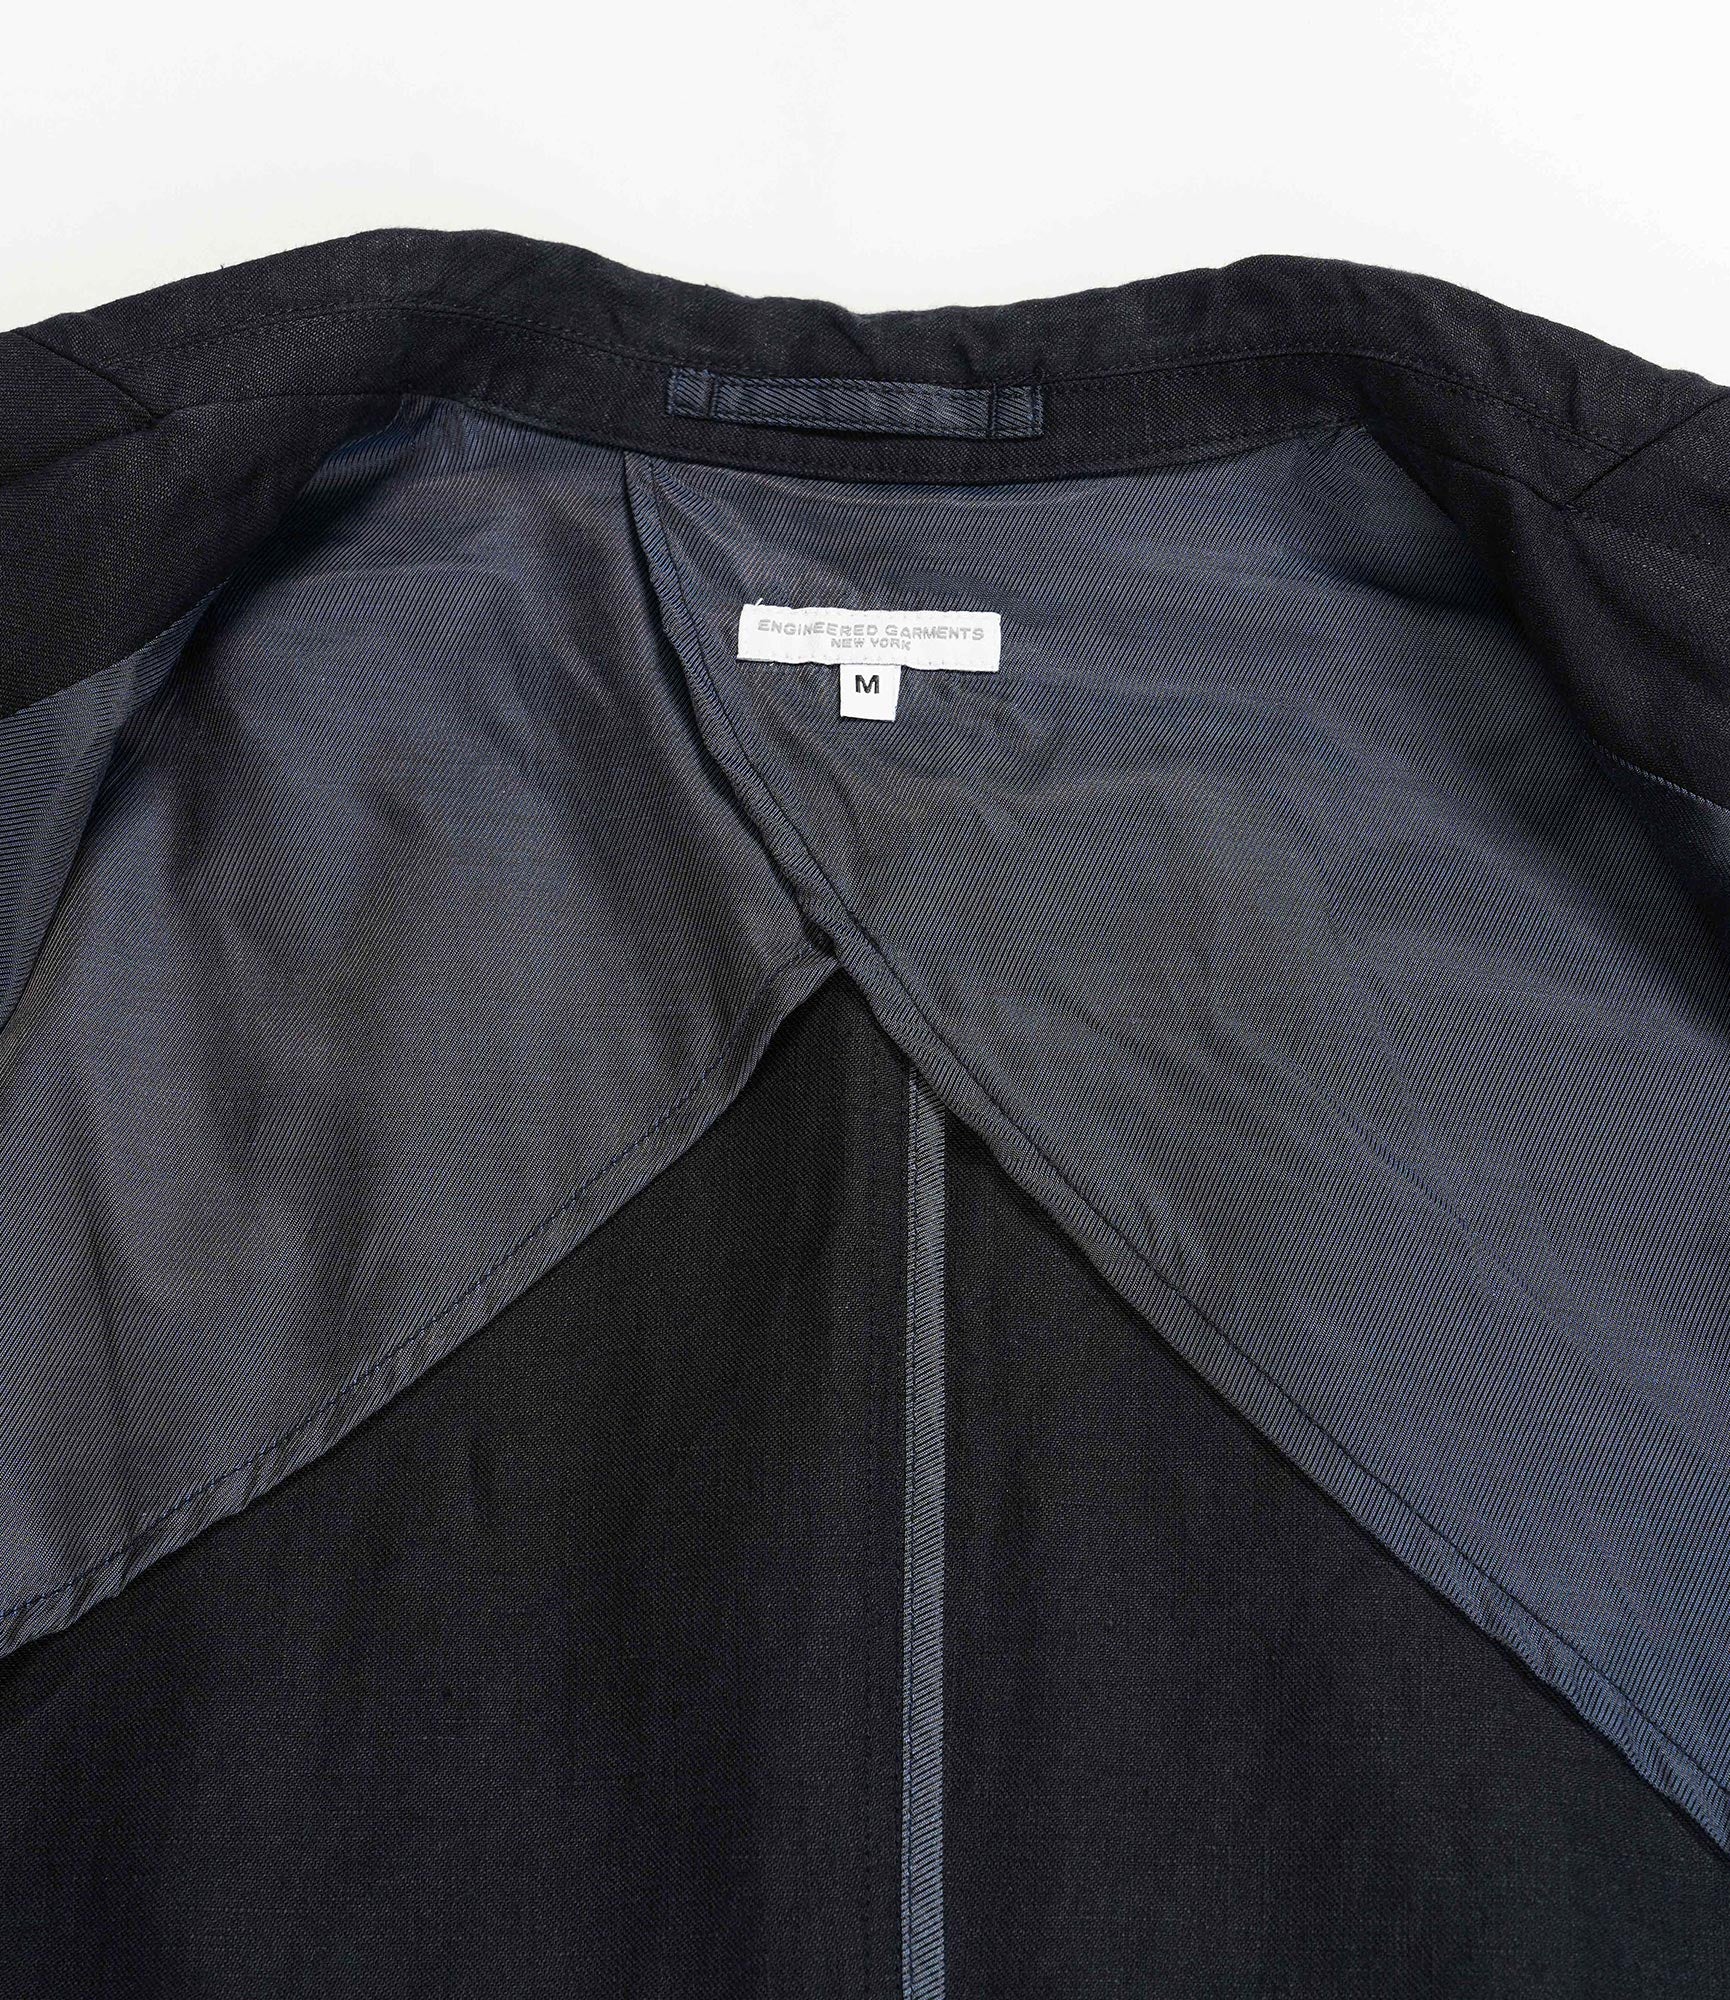 Engineered Garments Ivy Blazer - Navy Linen Twill